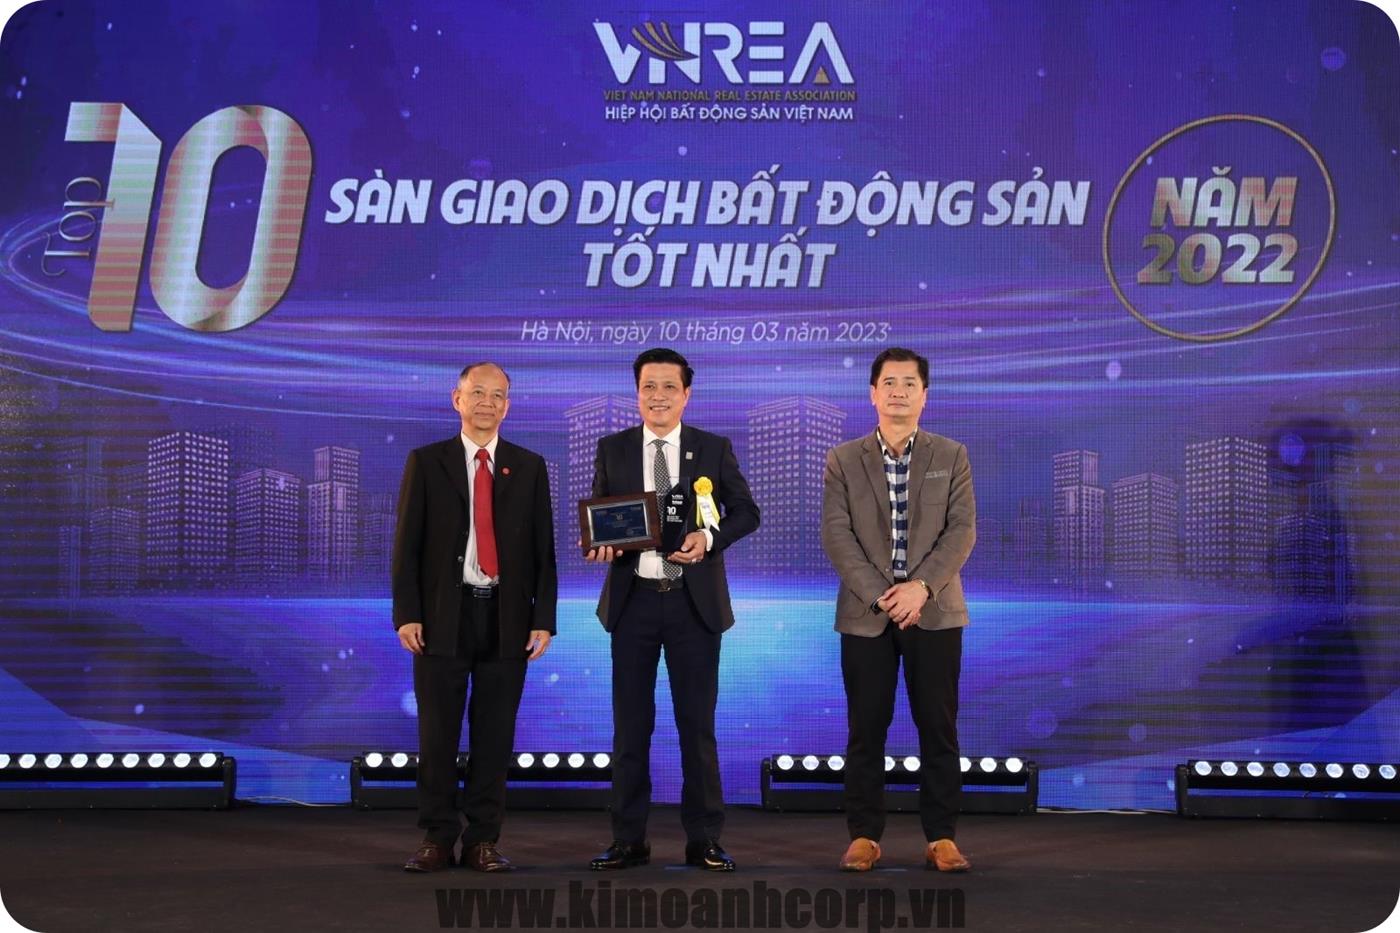 Ông Tô Duy Chinh – Giám đốc Khối Bán hàng Kim Oanh Group – nhận giải “Top 10 sàn giao dịch bất động sản tốt nhất năm 2022” dành cho Kim Oanh Realty, thành viên Kim Oanh Group.